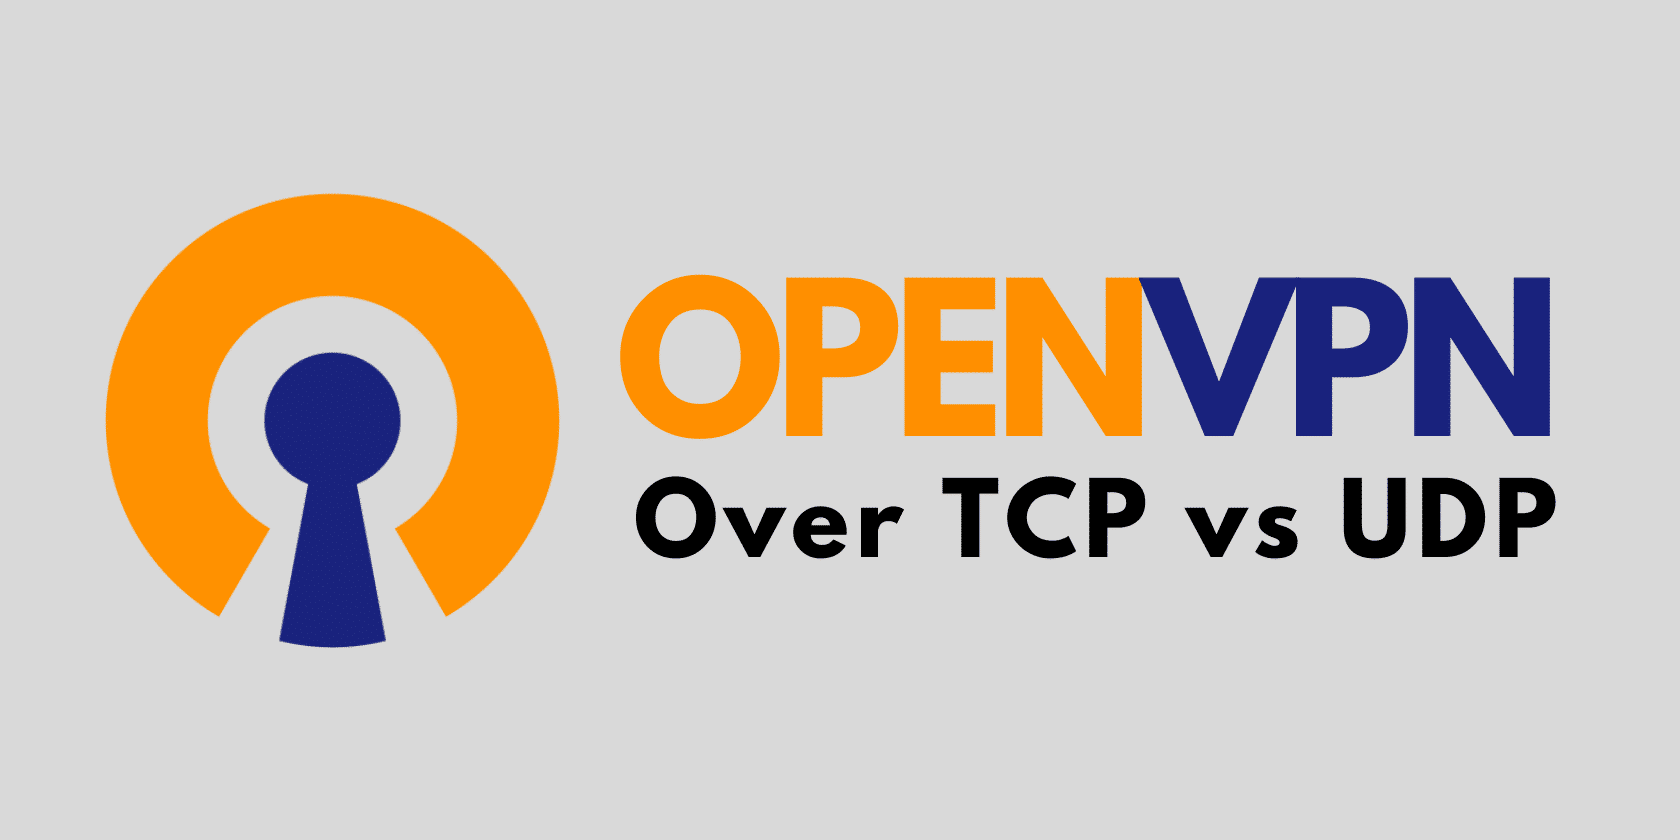 OpenVPN over TCP vs UDP